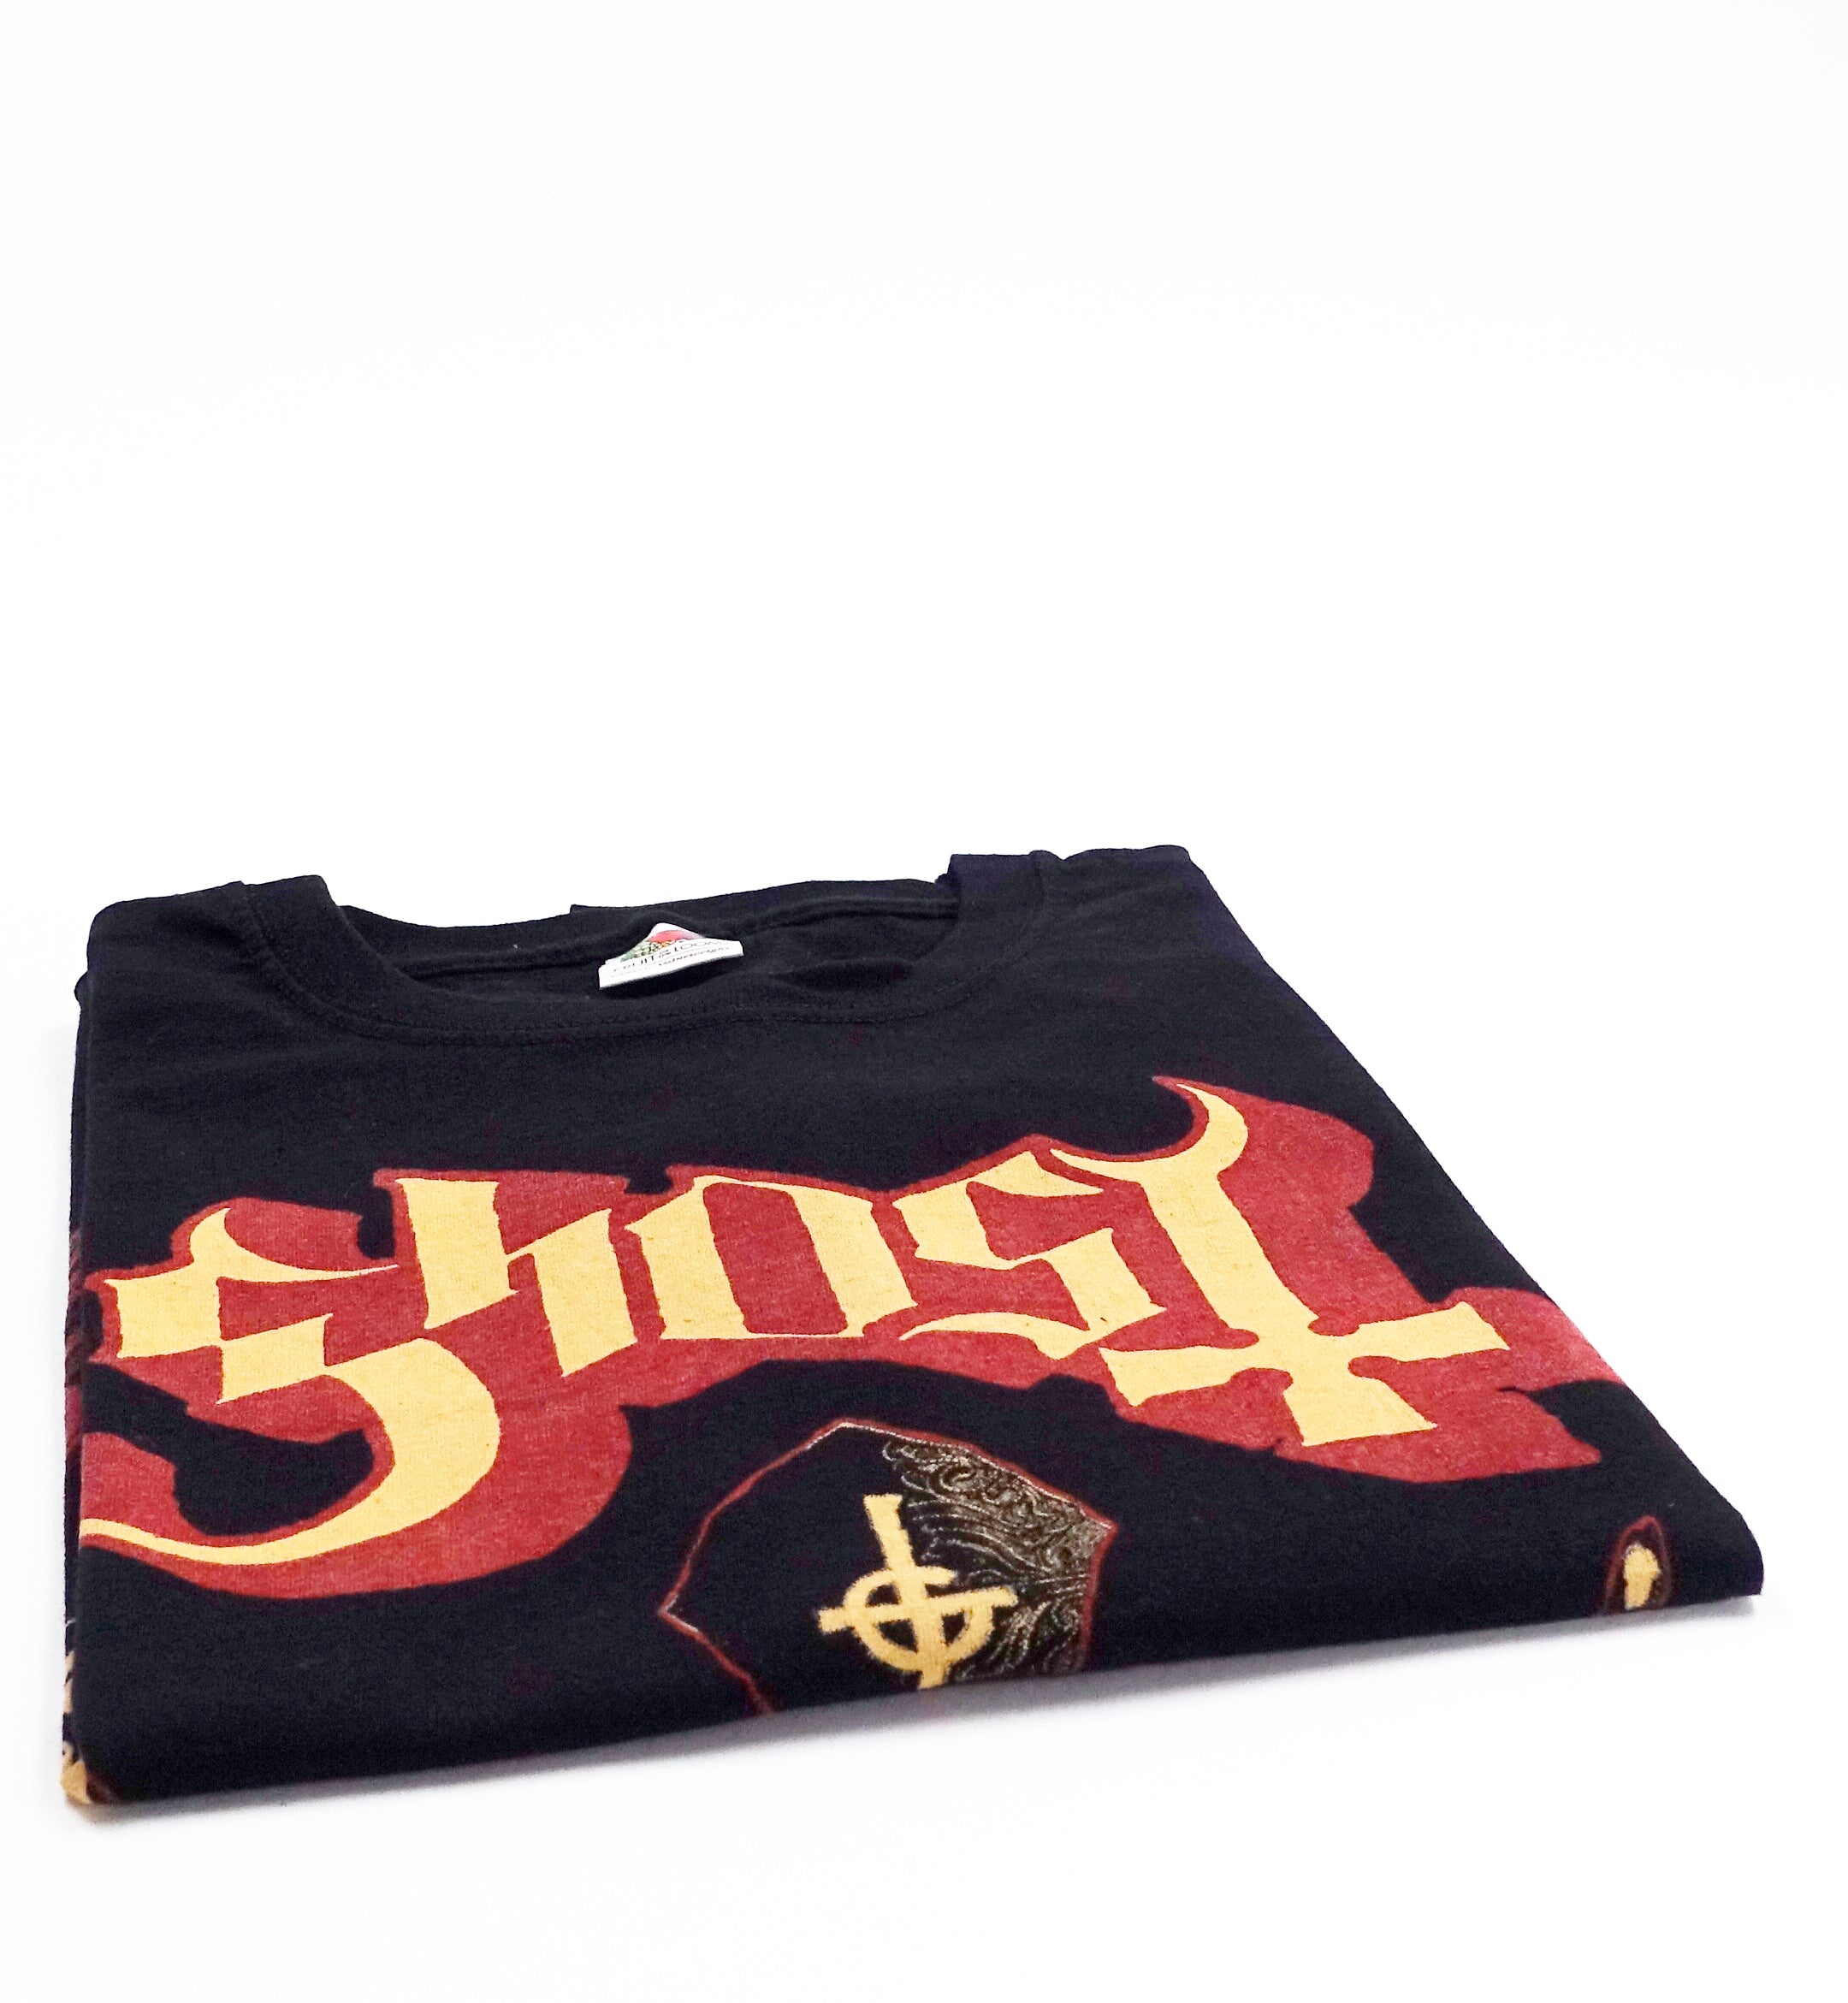 Ghost ‎– Infestissumam UK & Europe 2013 Tour Shirt Size Large